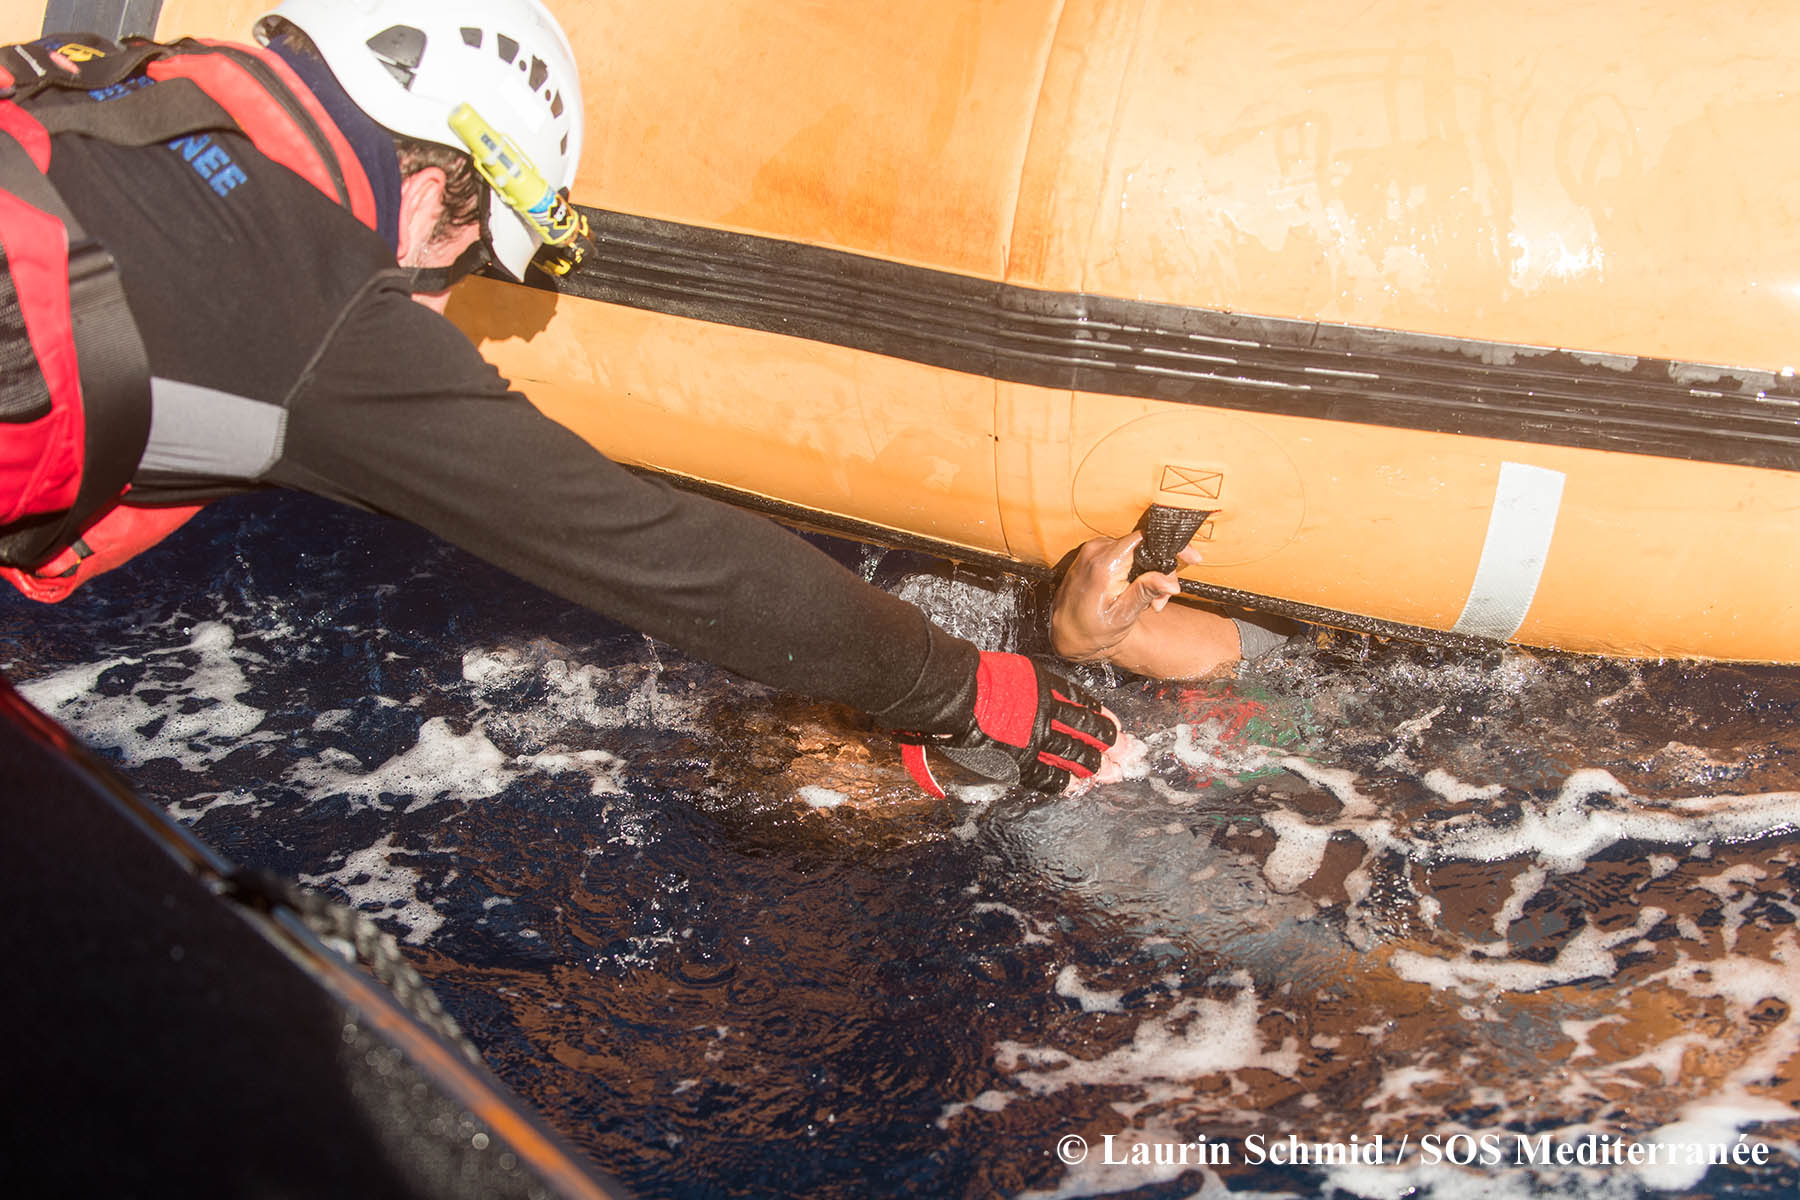 Le 27 janvier dernier, l’Aquarius a secouru 99 personnes en Méditerranée. Un nombre inconnu d'hommes, de femmes et d'enfants sont toujours portés disparus, présumés noyés.